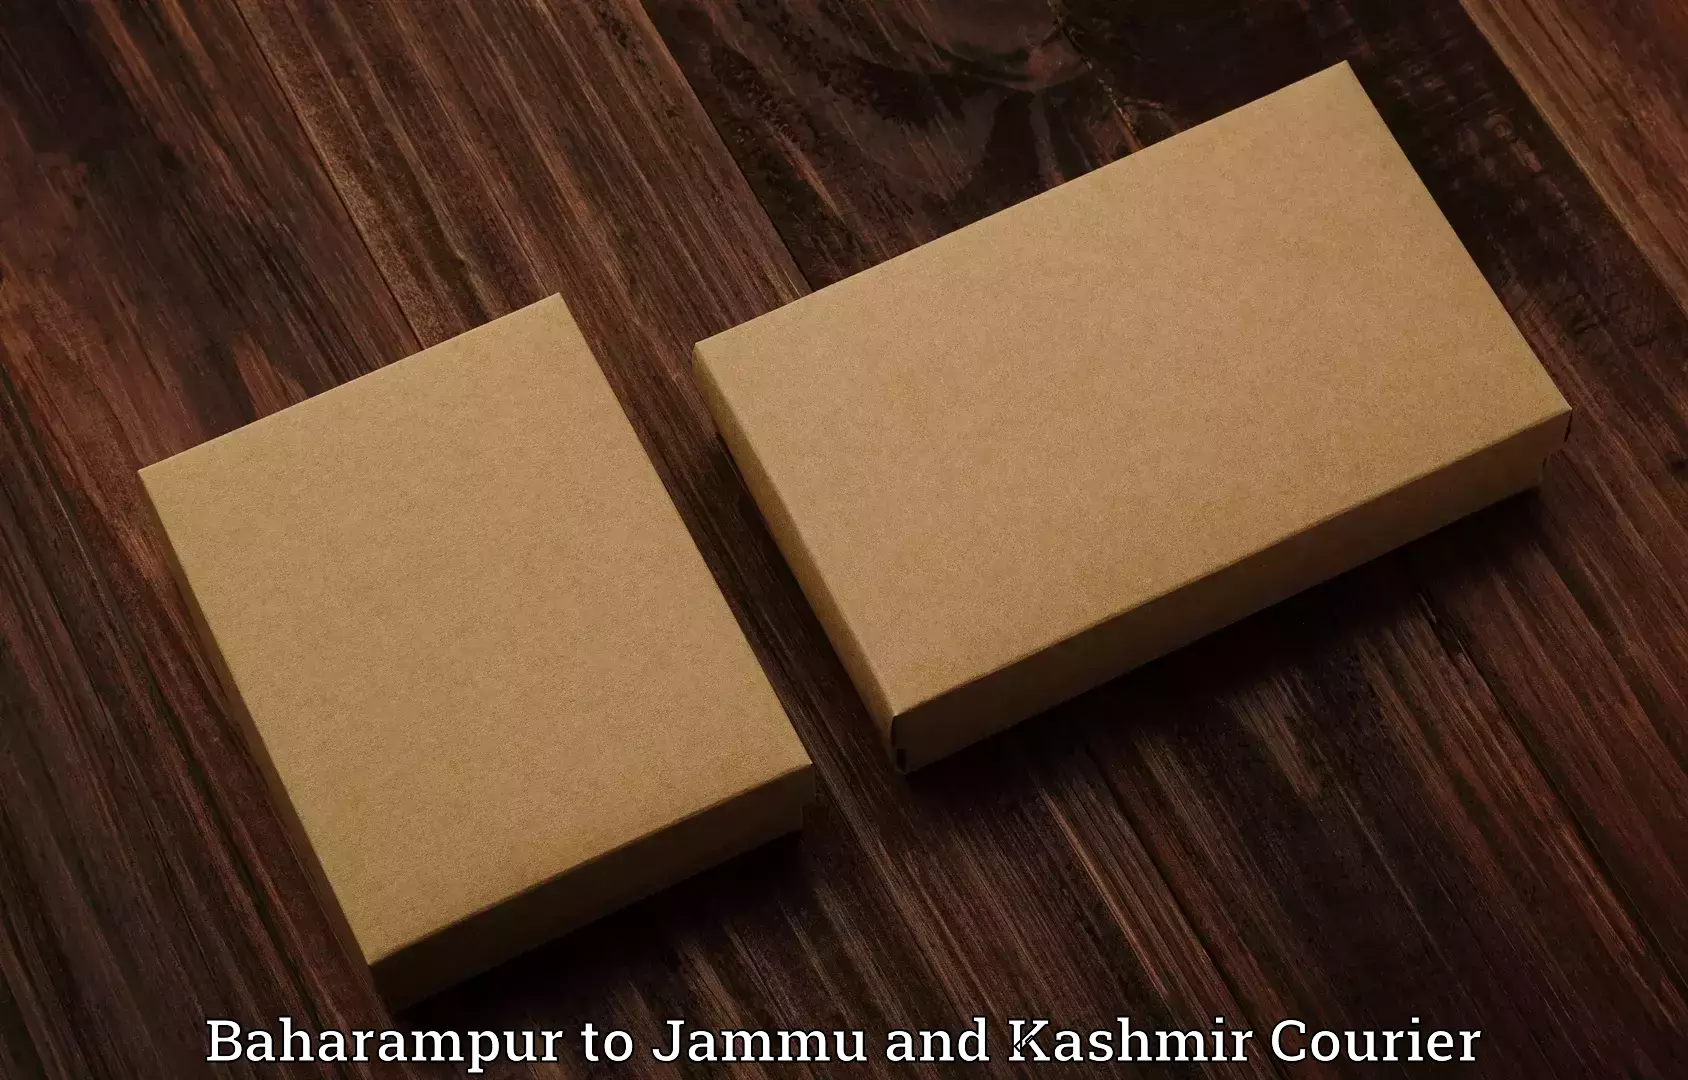 Luggage transit service Baharampur to Jammu and Kashmir